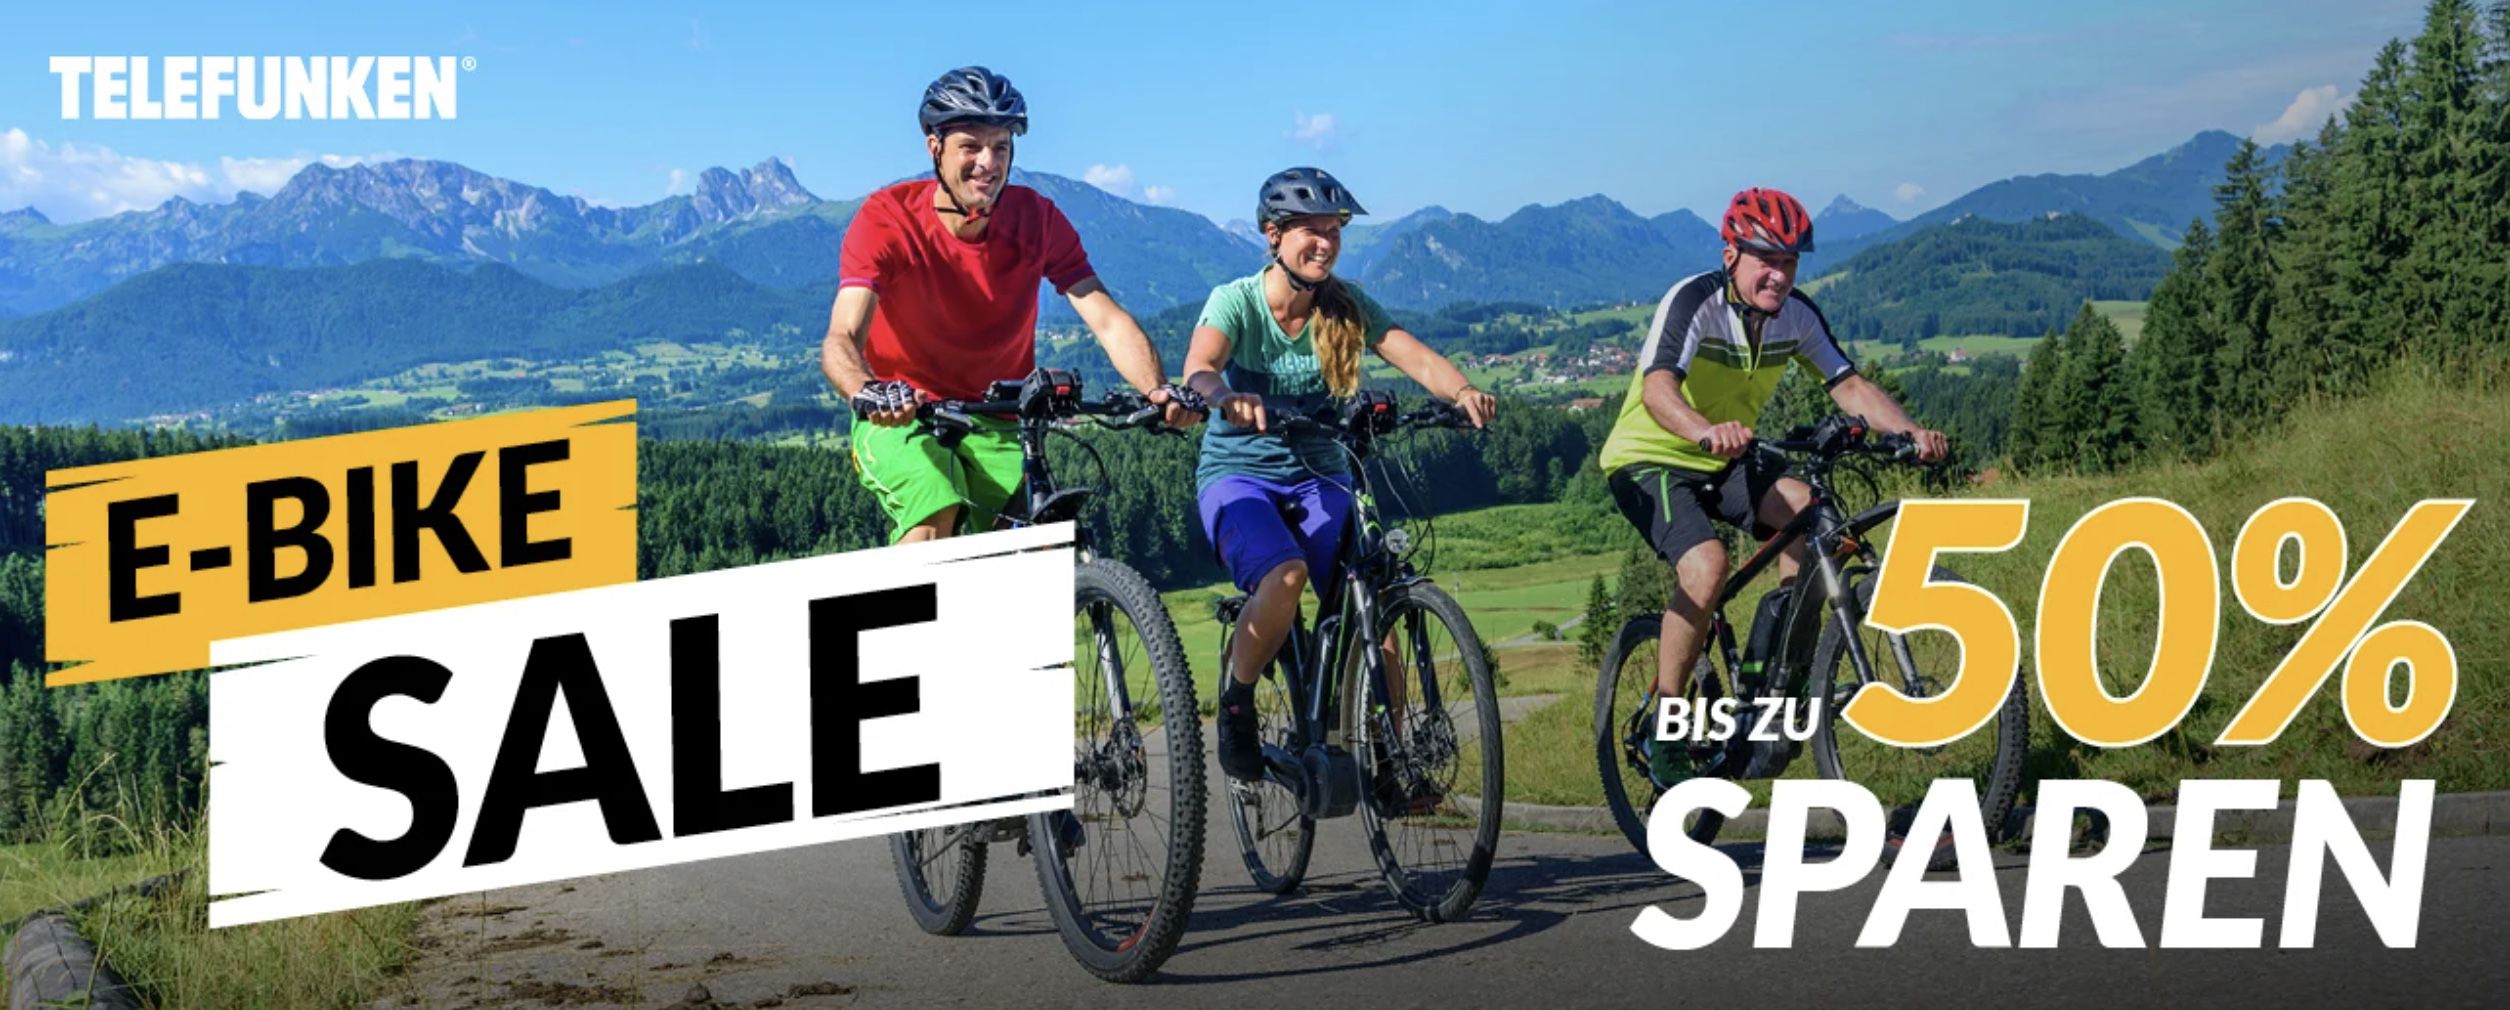 Bis 50% Rabatt auf Telefunken E Bikes + keine Versandkosten   z.B. Telefunken Expedition XT480 für 799€ (statt 904€)